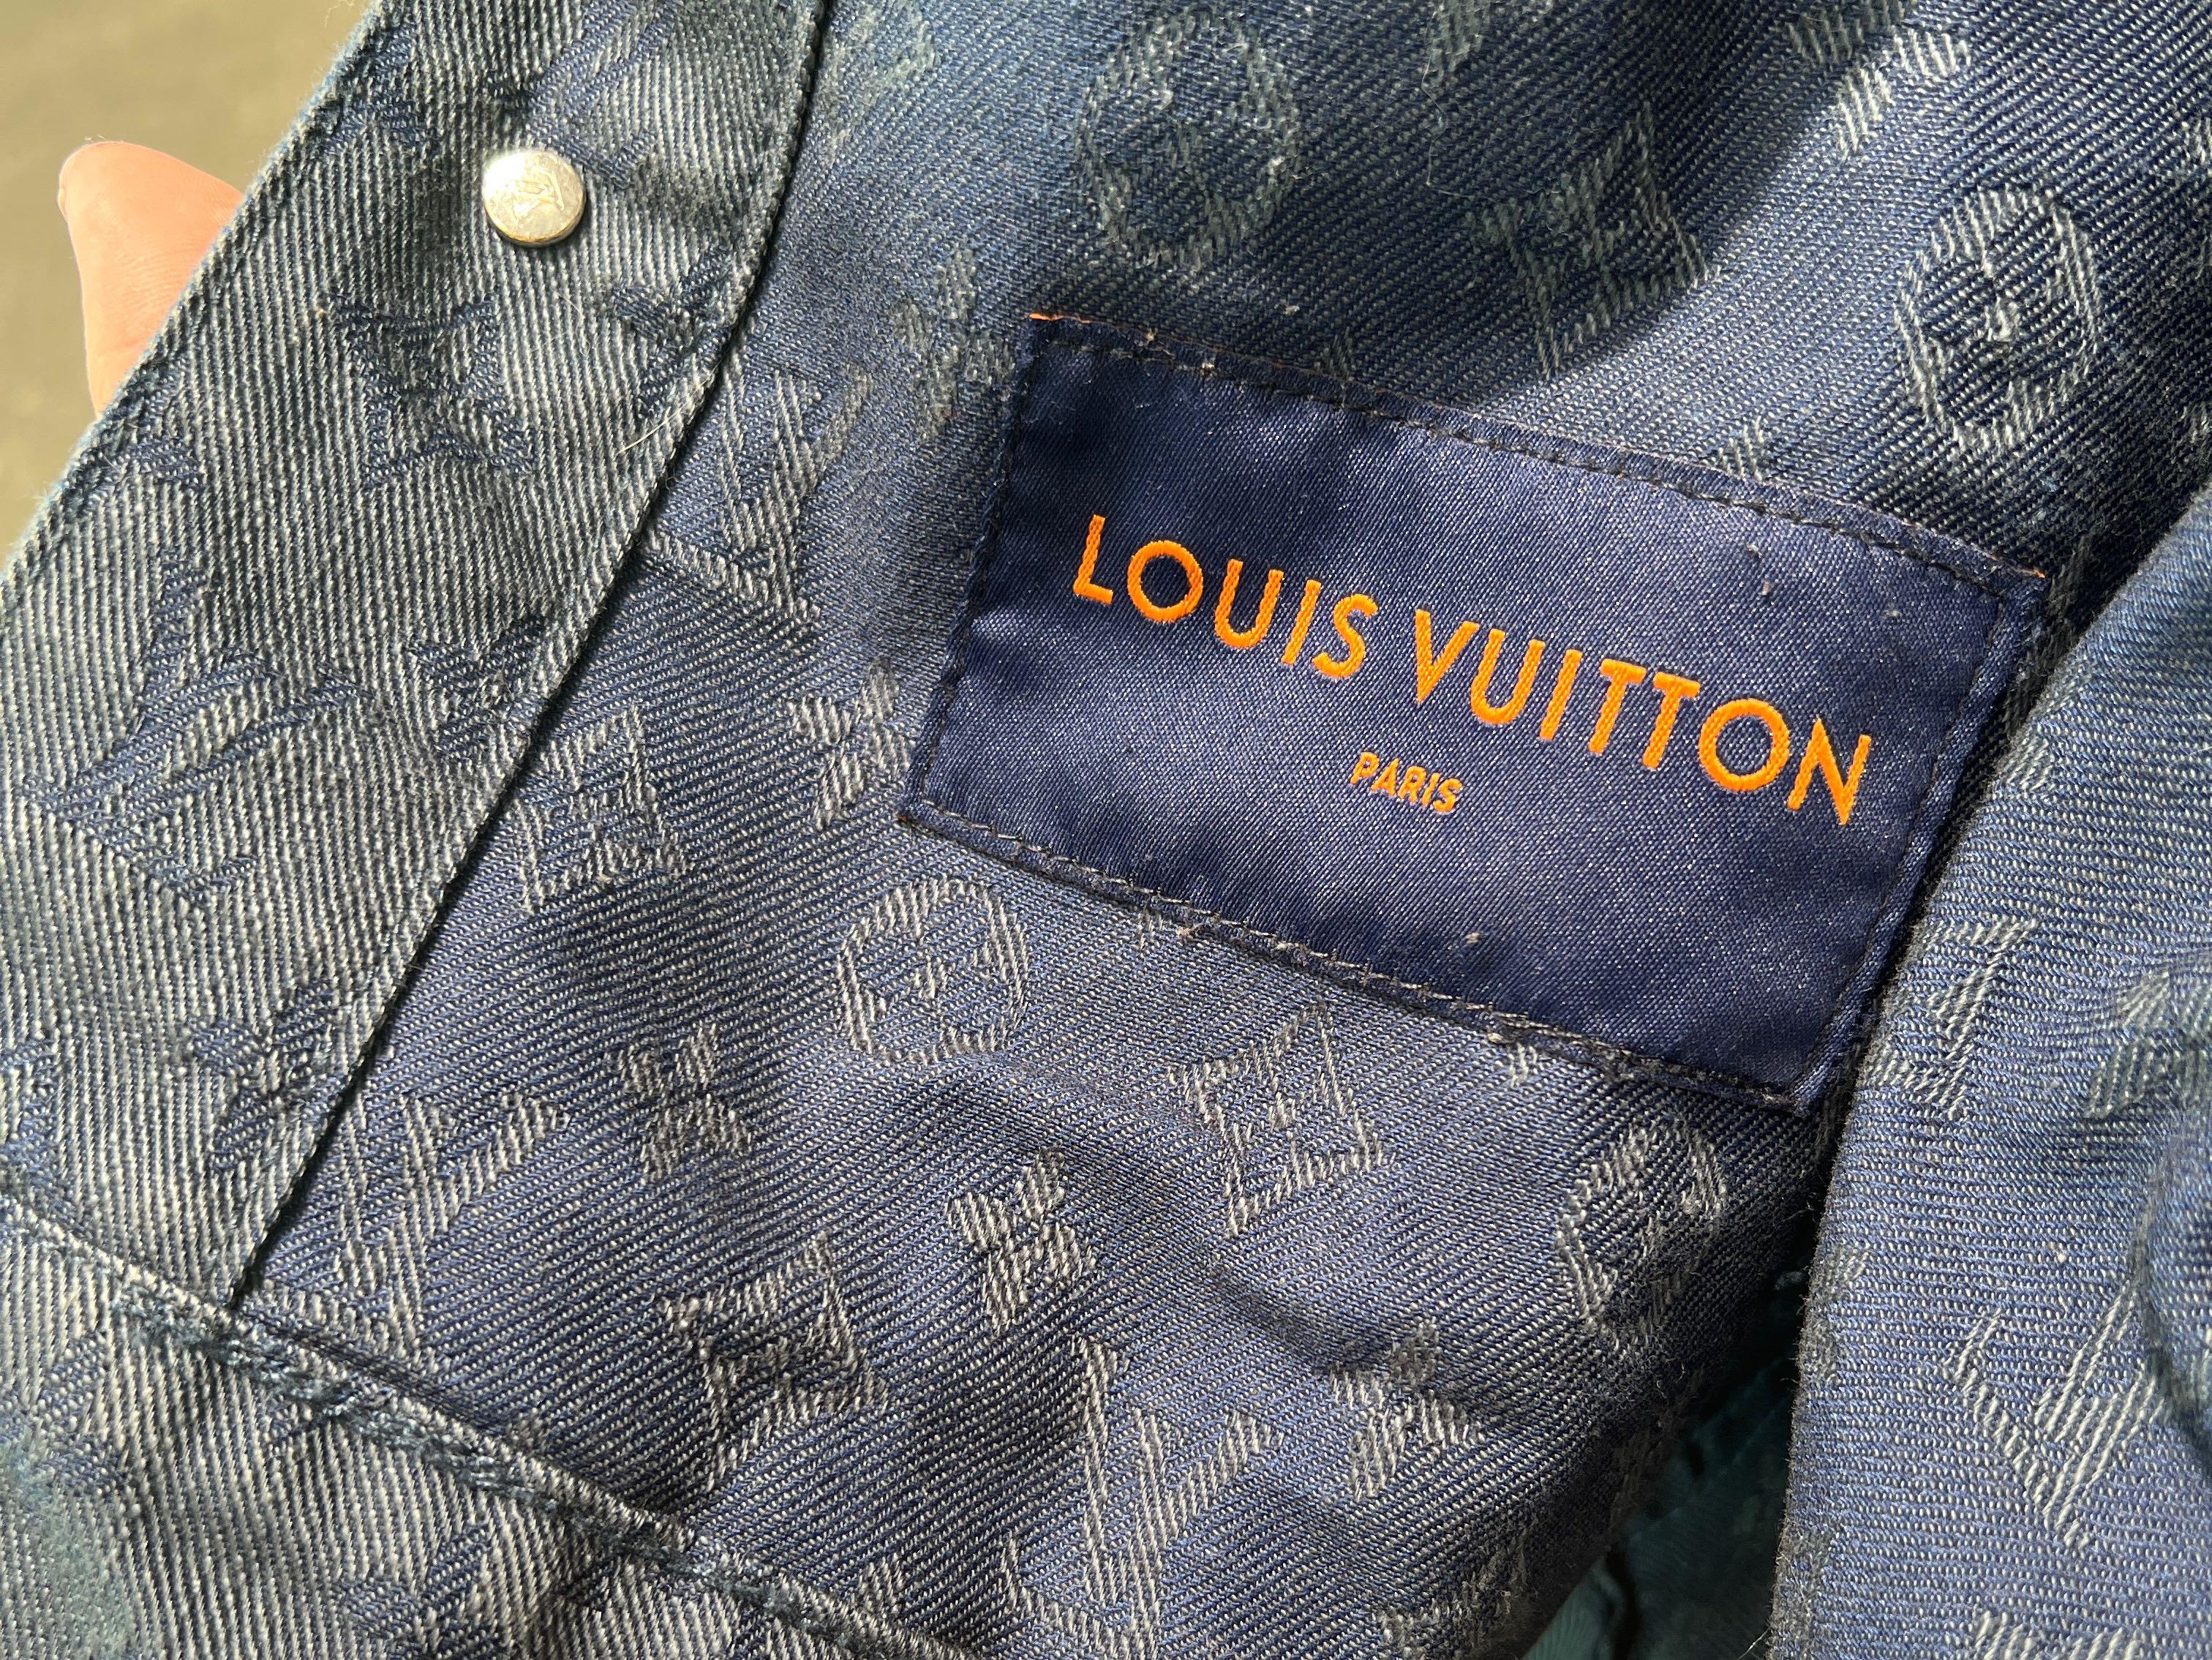 Authentic LOUIS VUITTON Jacket #241-003-045-1921